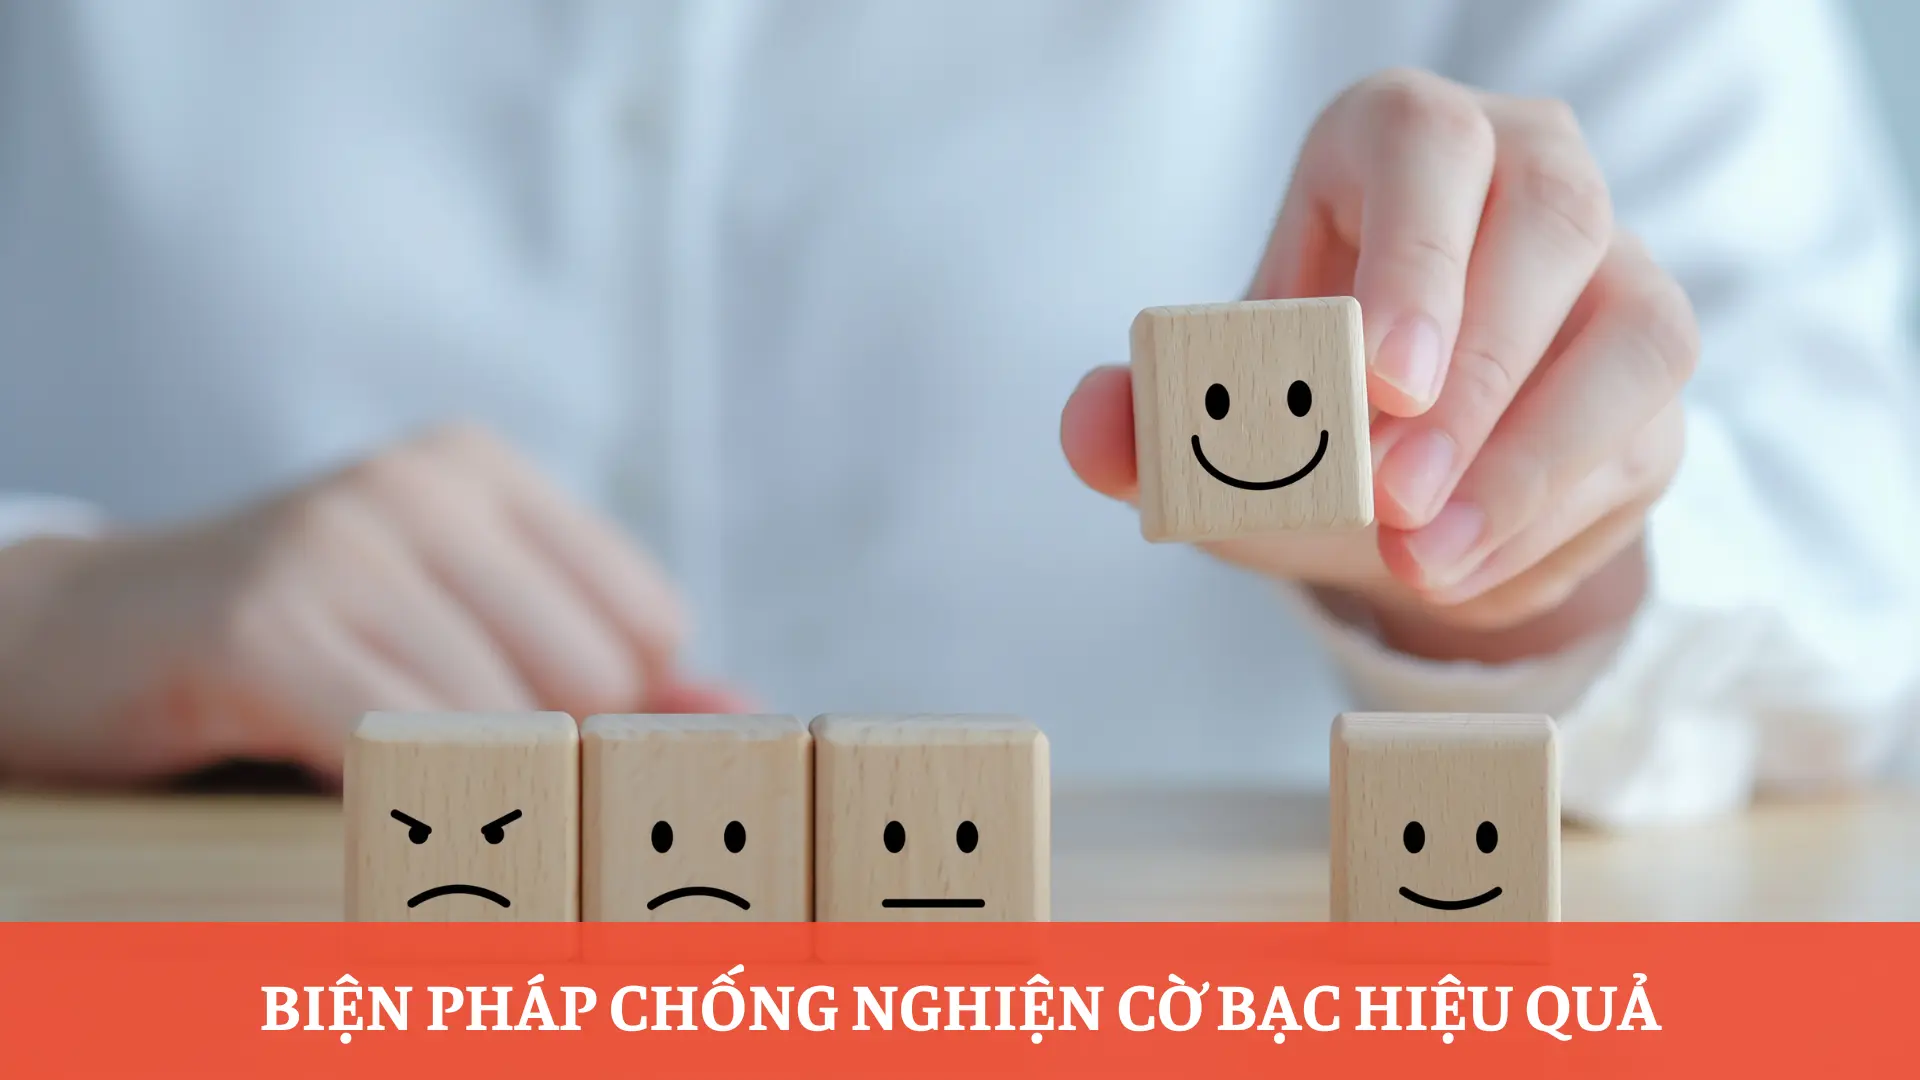 Bien-phap-hieu-qua-chong-nghien-co-bac-tai-sv88